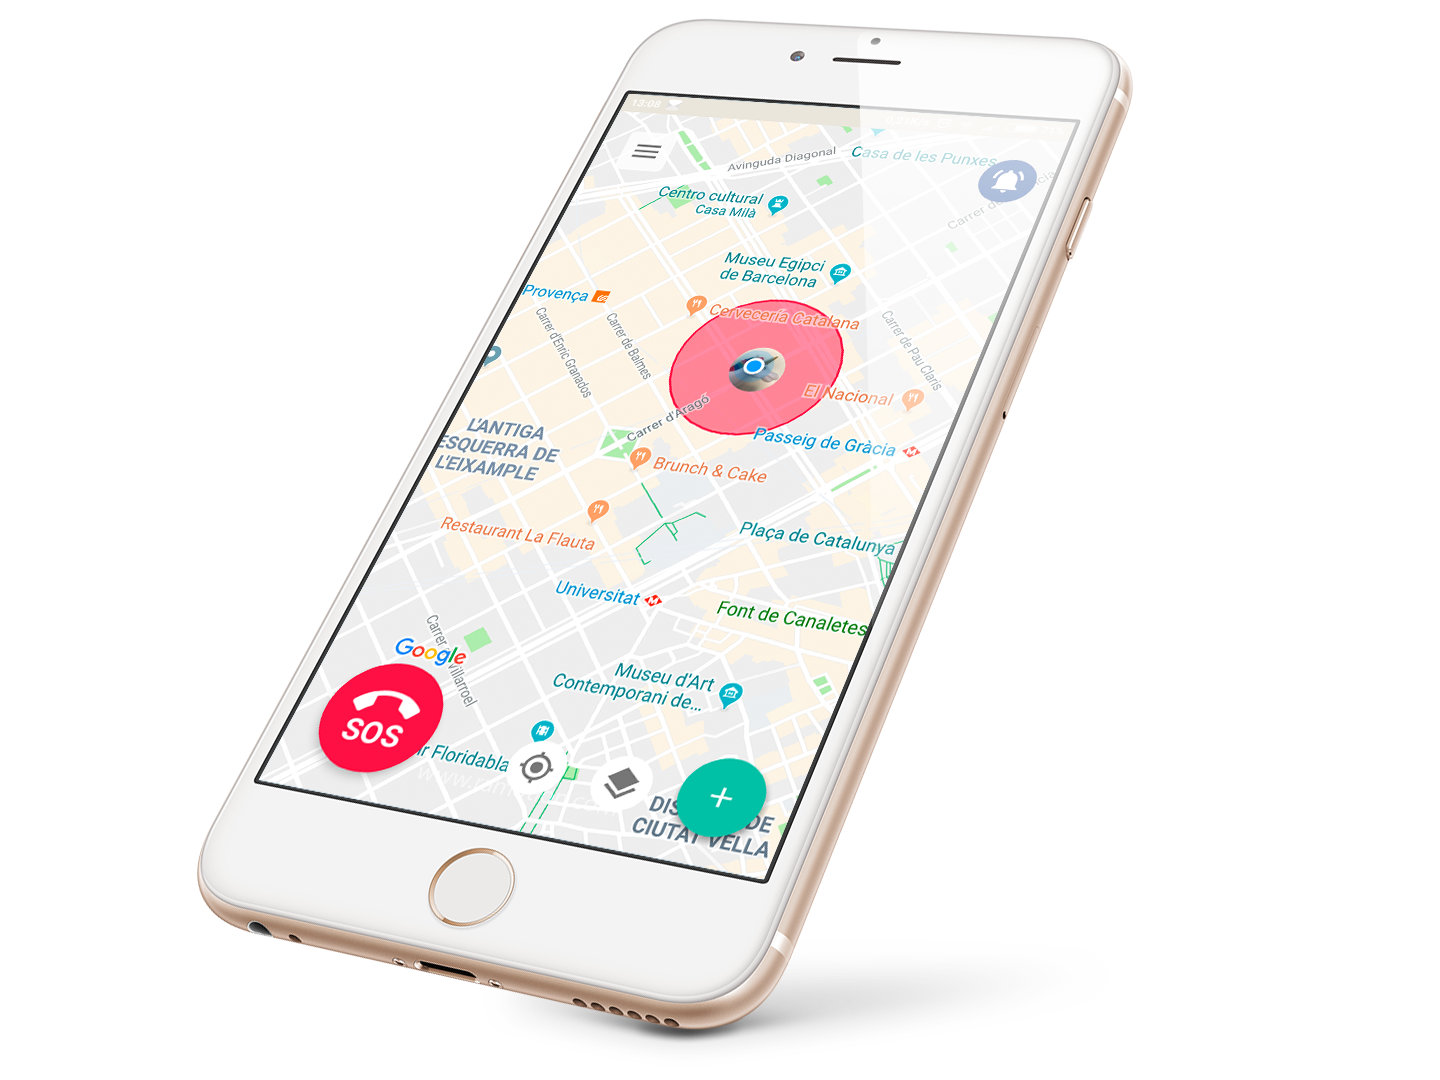 Acércate, la nueva app de ayuda imprescindible en tu dispositivo